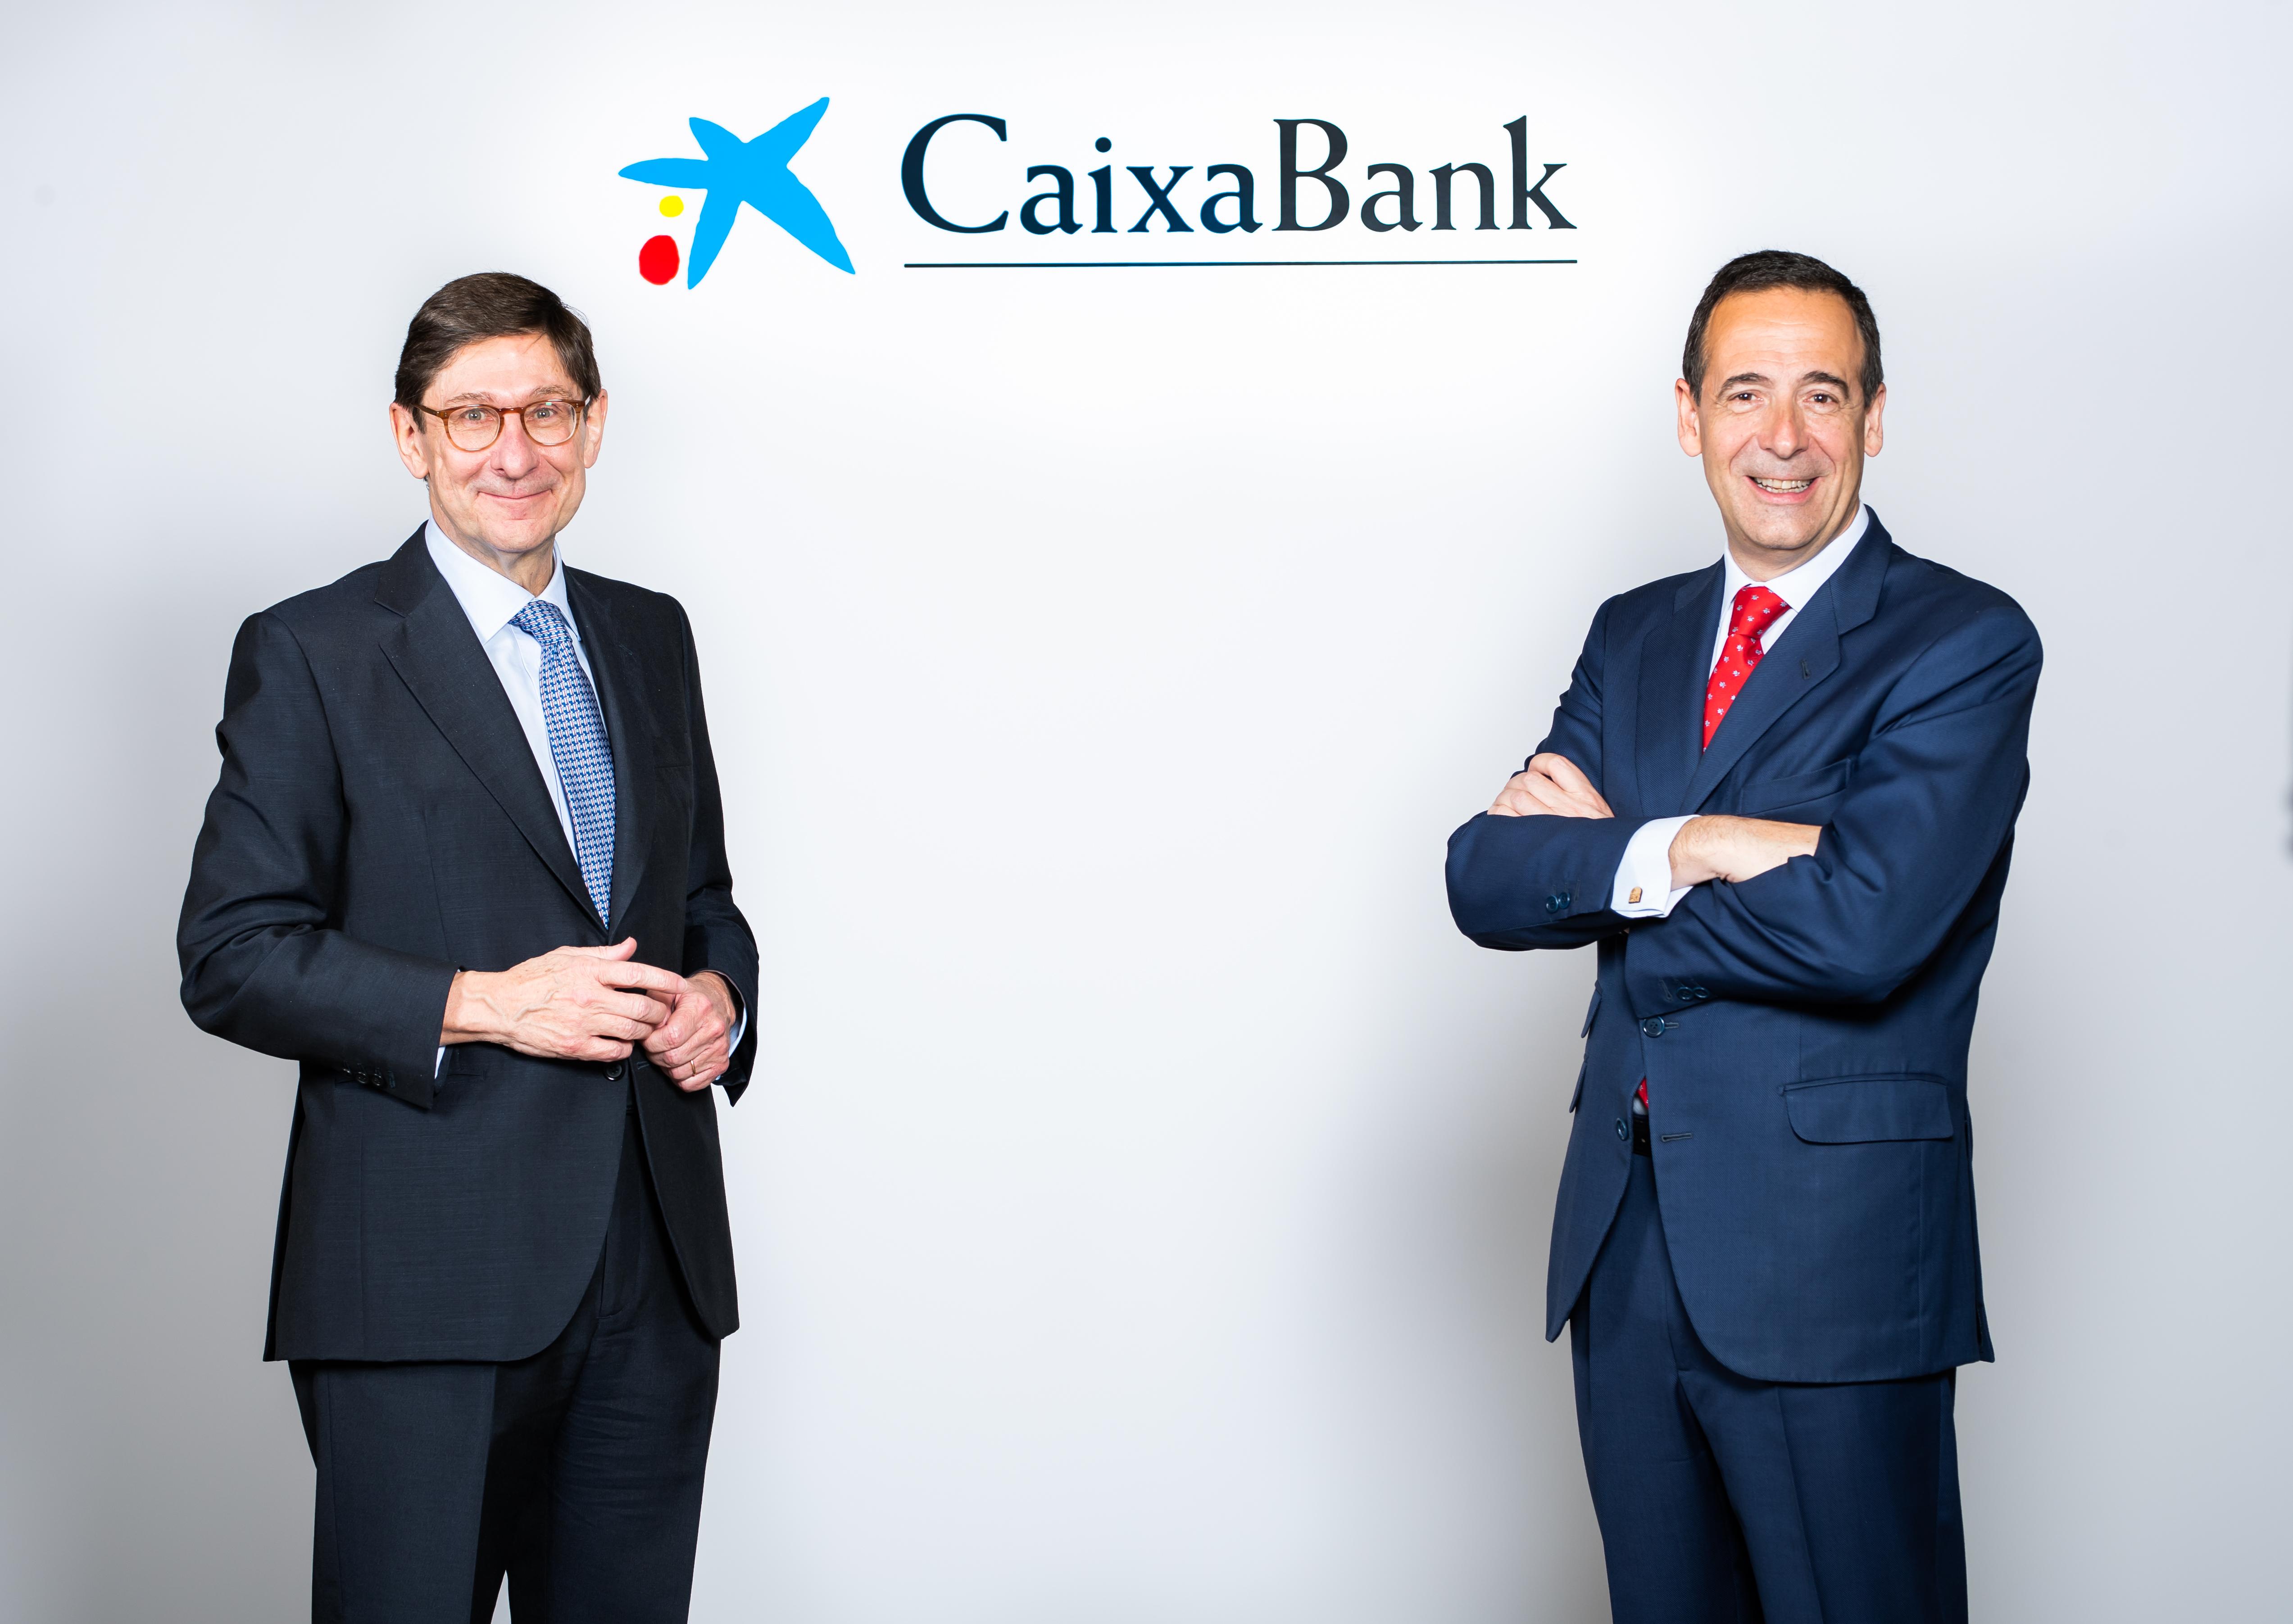 José Ignacio Goirigolzarri, presidente de CaixaBank, y Gonzalo Gortázar, consejero delegado